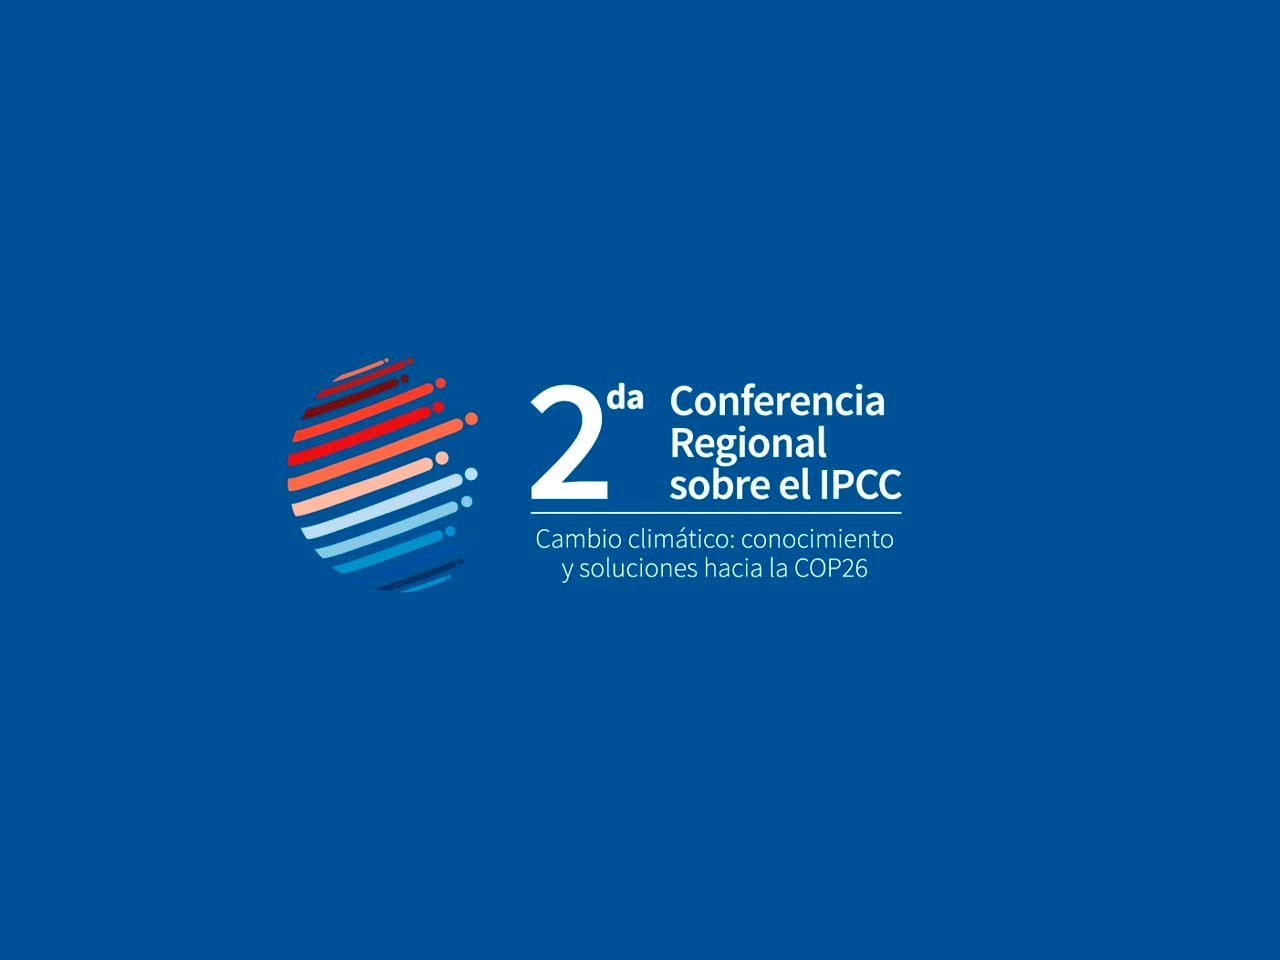 chile-sera-sede-de-la-2da-conferencia-regional-sobre-el-ipcc-cambio-climatico-conocimiento-y-soluciones-hacia-la-cop26